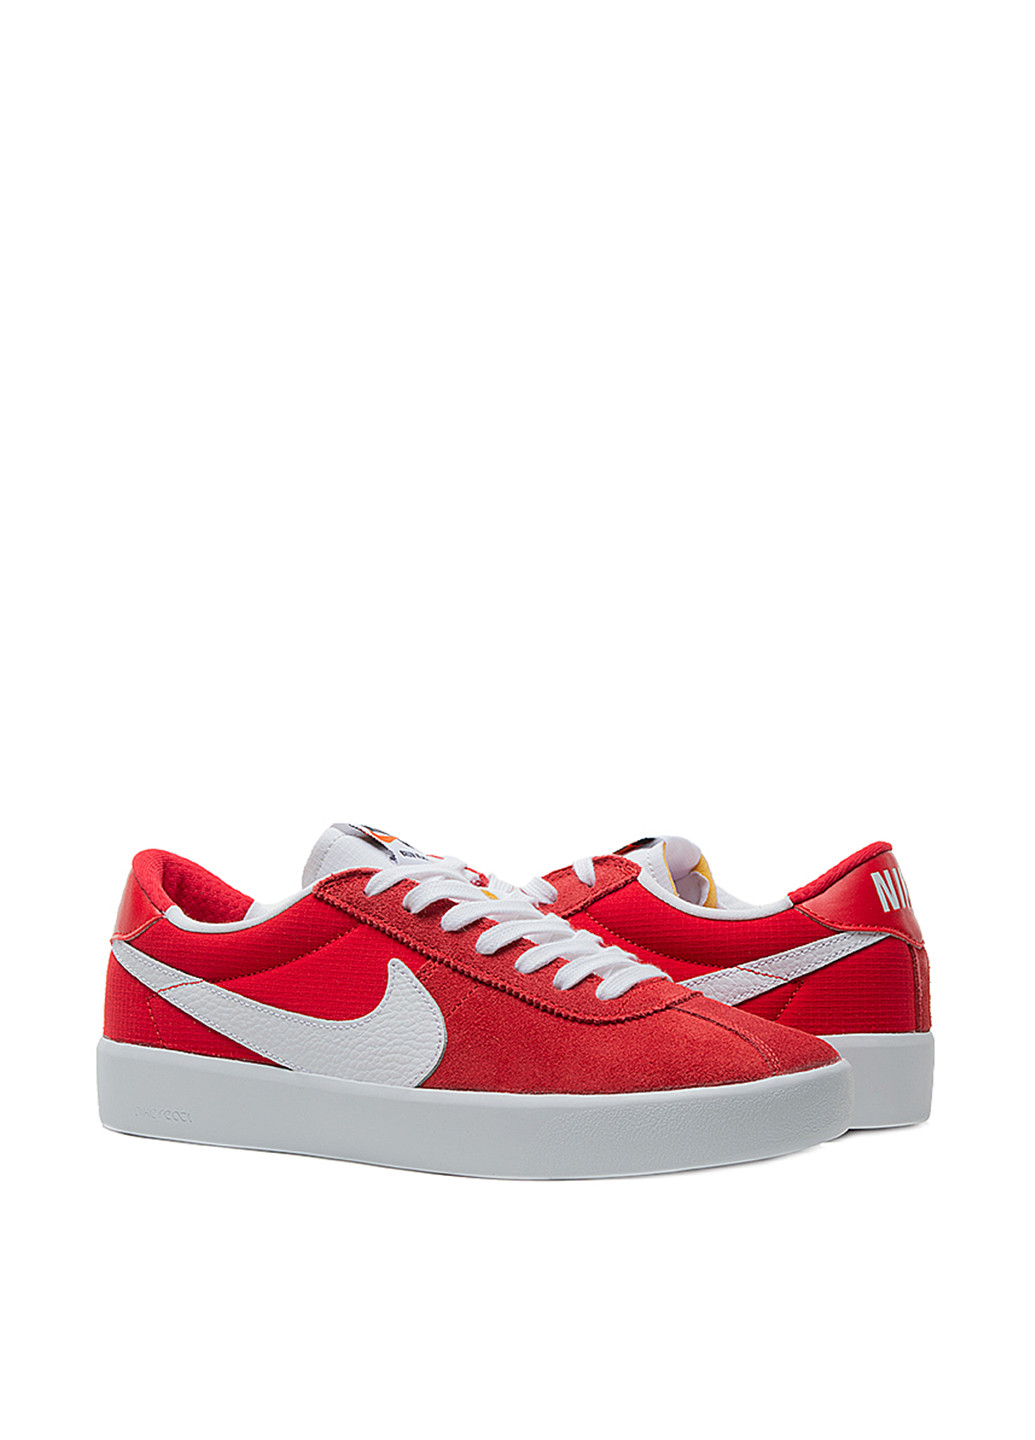 Червоні кросівки Nike Nike SB Bruin React